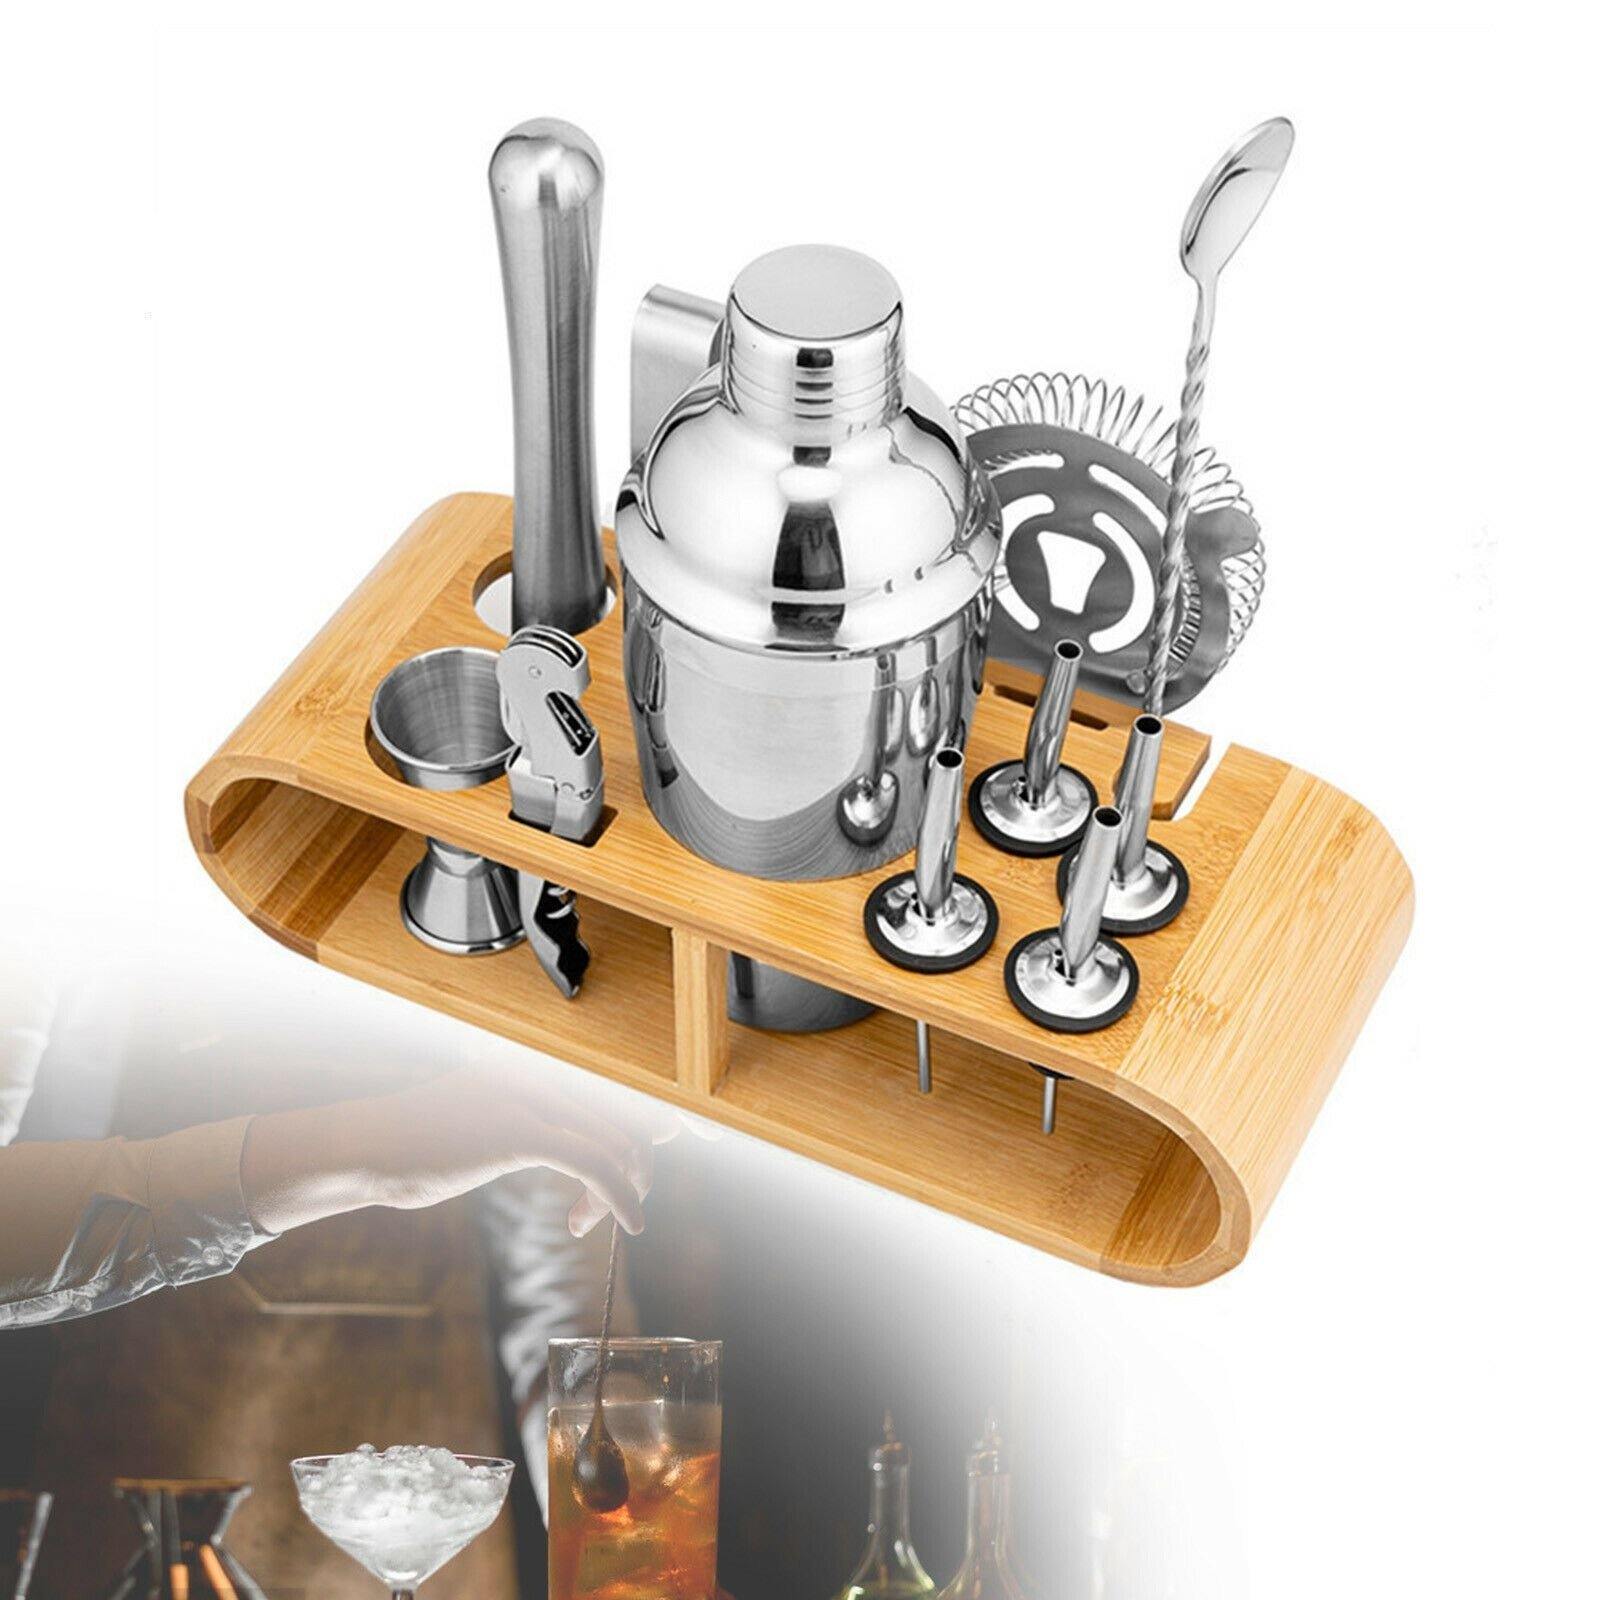 Buy 12 Pieces Cocktail Mixer Shaker Set Online Australia at BargainTown